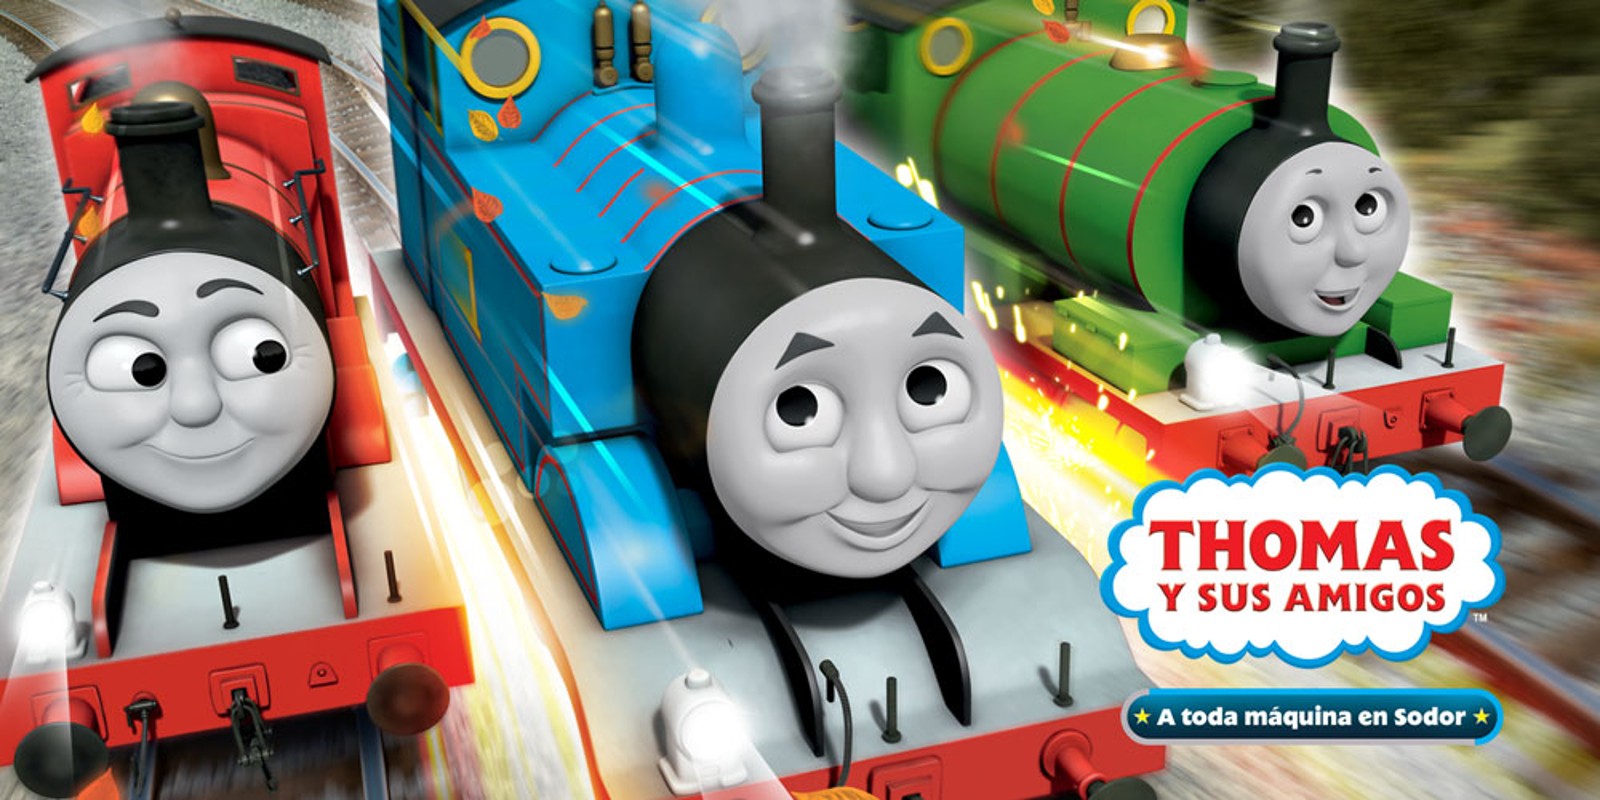 Thomas y sus amigos a toda máquina en Sodor